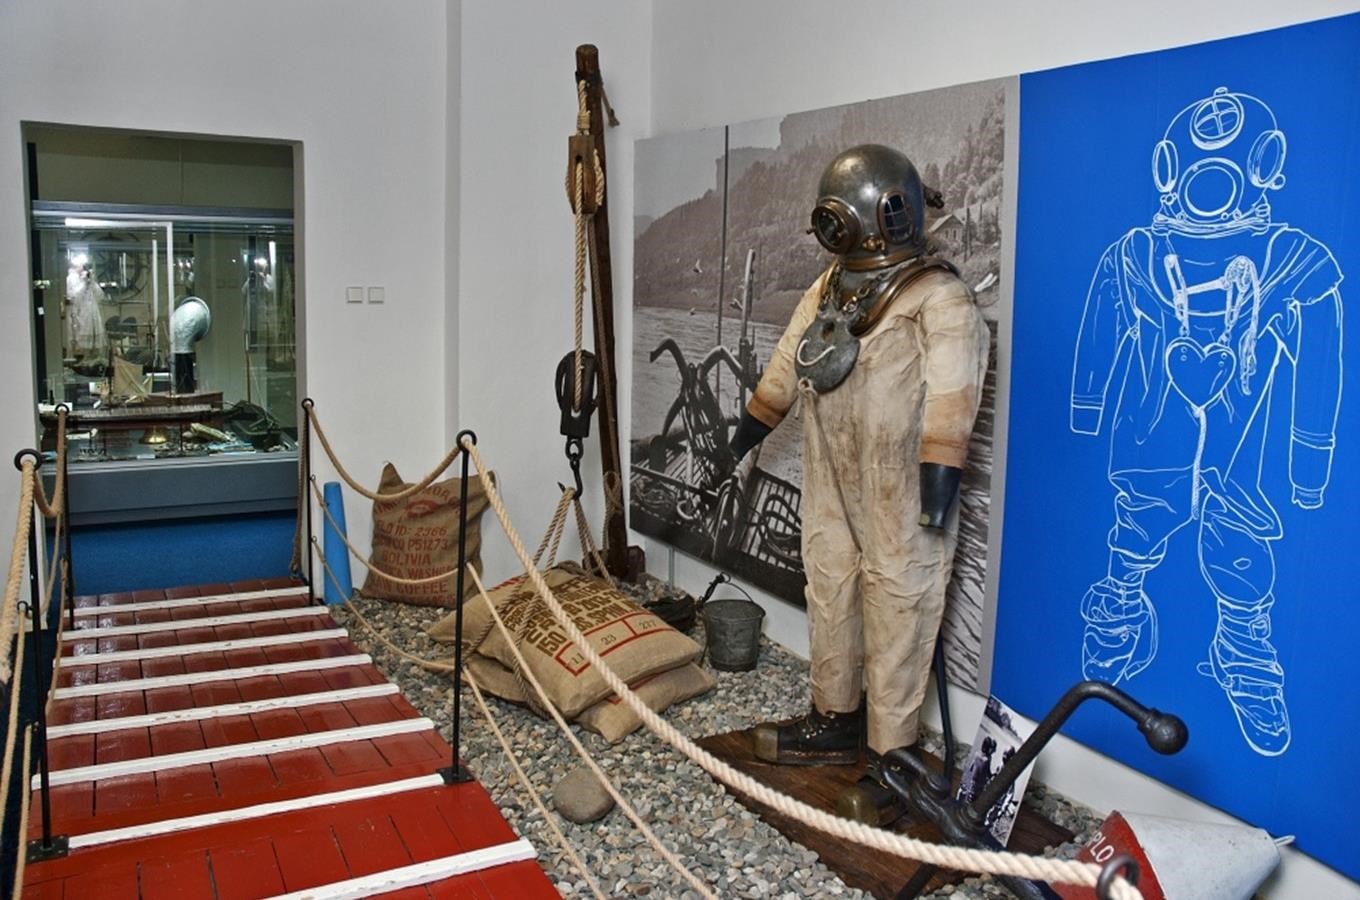 Oblastní muzeum v Děčíně - expozice lodní dopravy na Labi a gotického umění